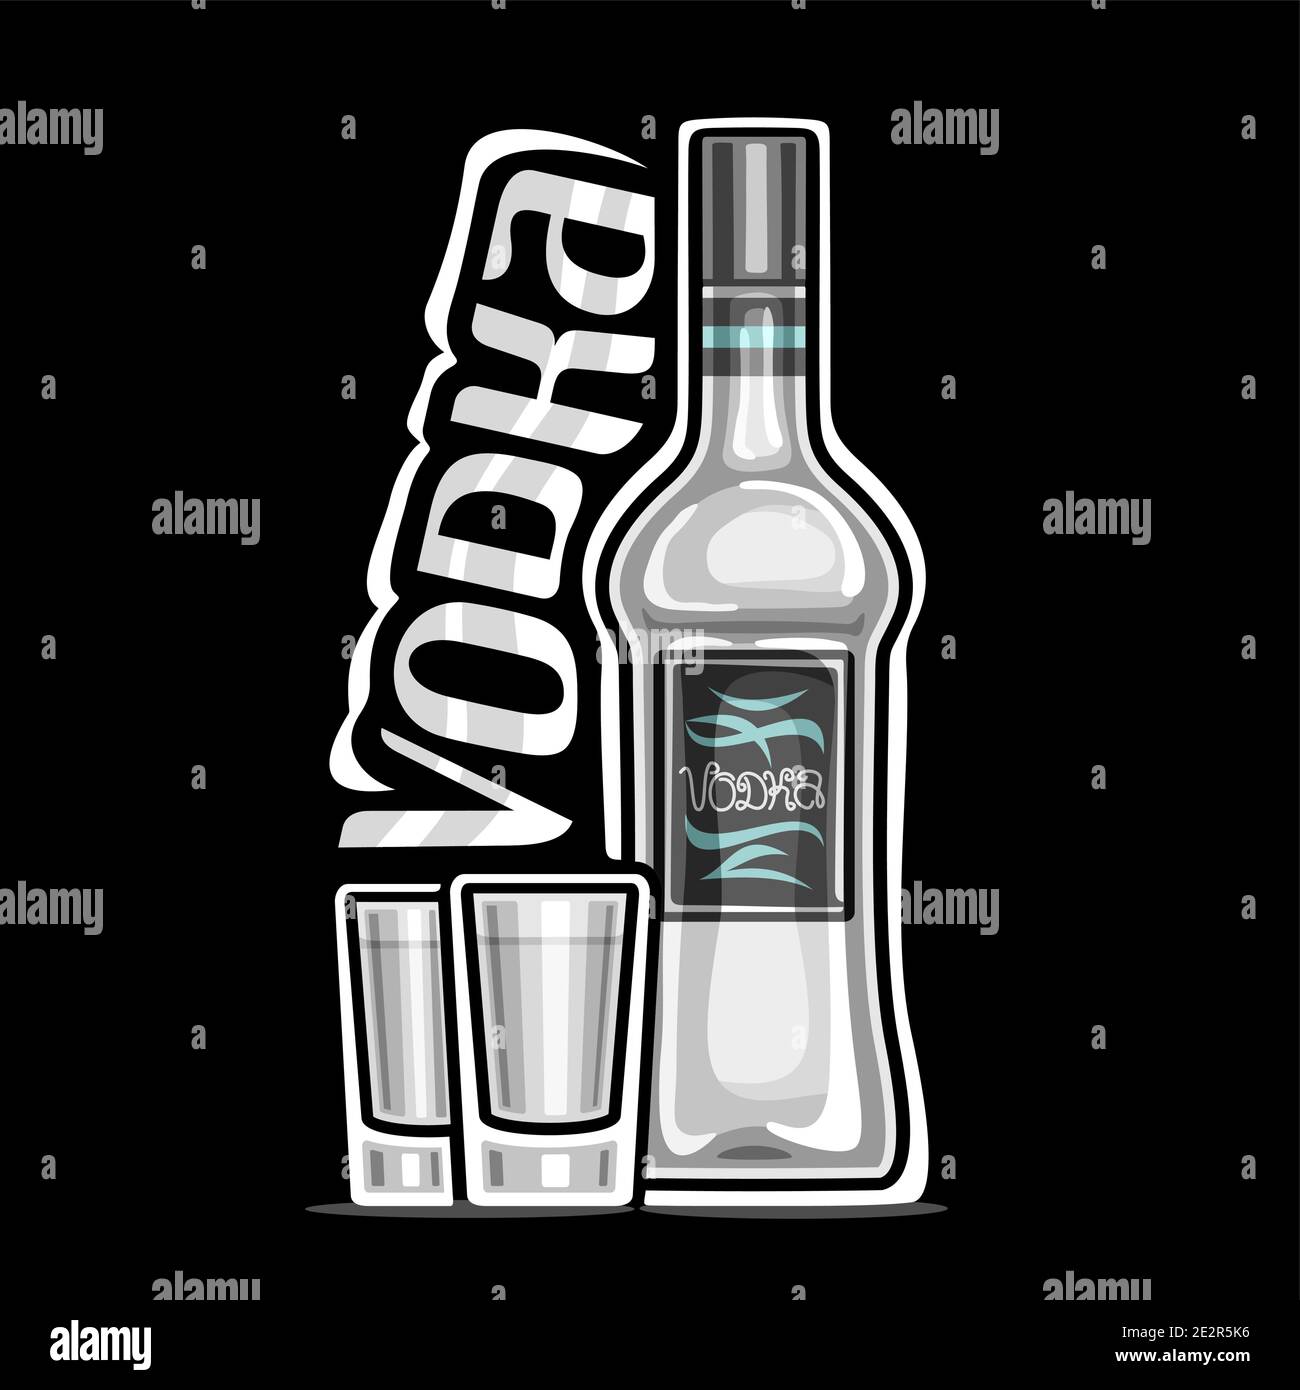 Logo vettoriale per Vodka, illustrazione del contorno della bottiglia bianca con etichetta decorativa e 2 bicchieri full shot con vodka refrigerata, placard quadrata con uniq Illustrazione Vettoriale